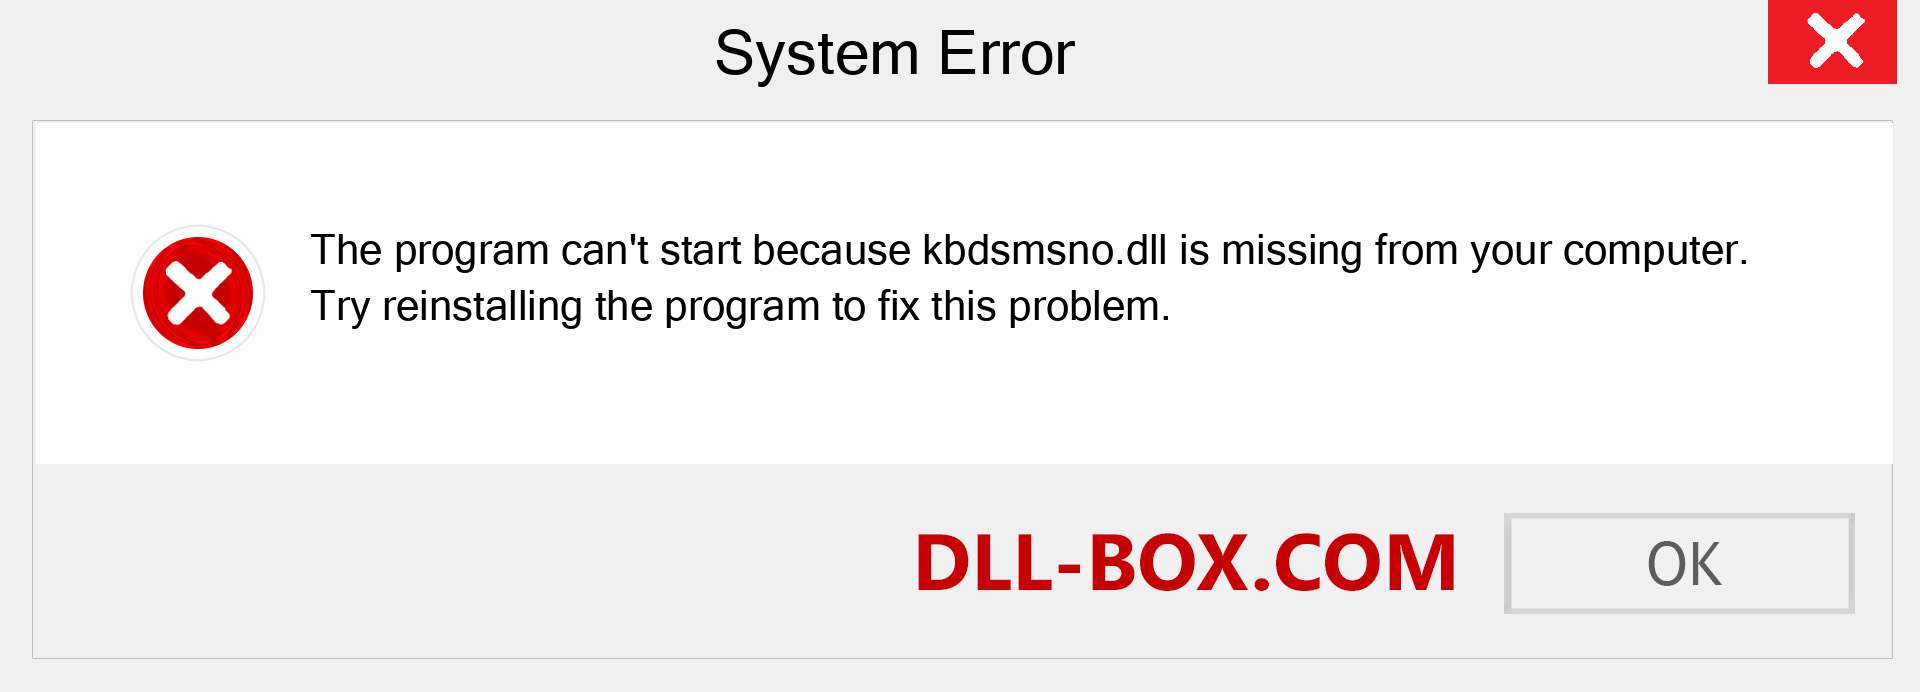  kbdsmsno.dll file is missing?. Download for Windows 7, 8, 10 - Fix  kbdsmsno dll Missing Error on Windows, photos, images